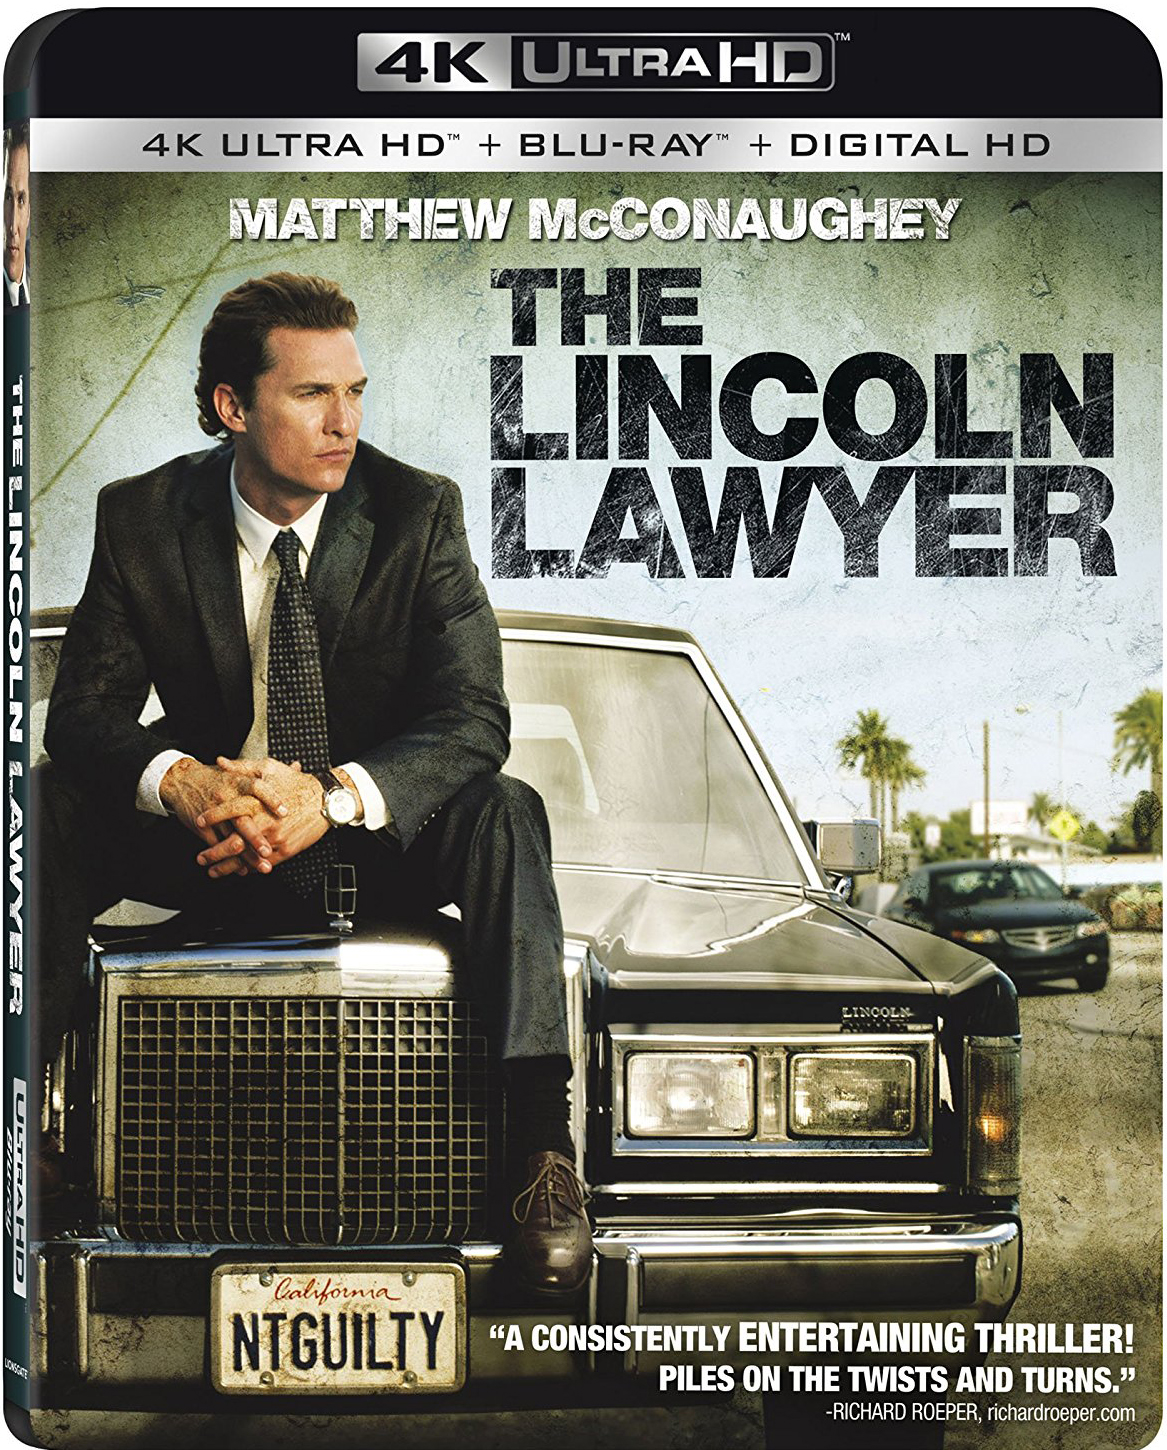 [林肯律师].The.Lincoln.Lawyer.2011.UHD.BluRay.2160p.HEVC.TrueHD.7.1-WhiteRhino   61.17G-1.jpg